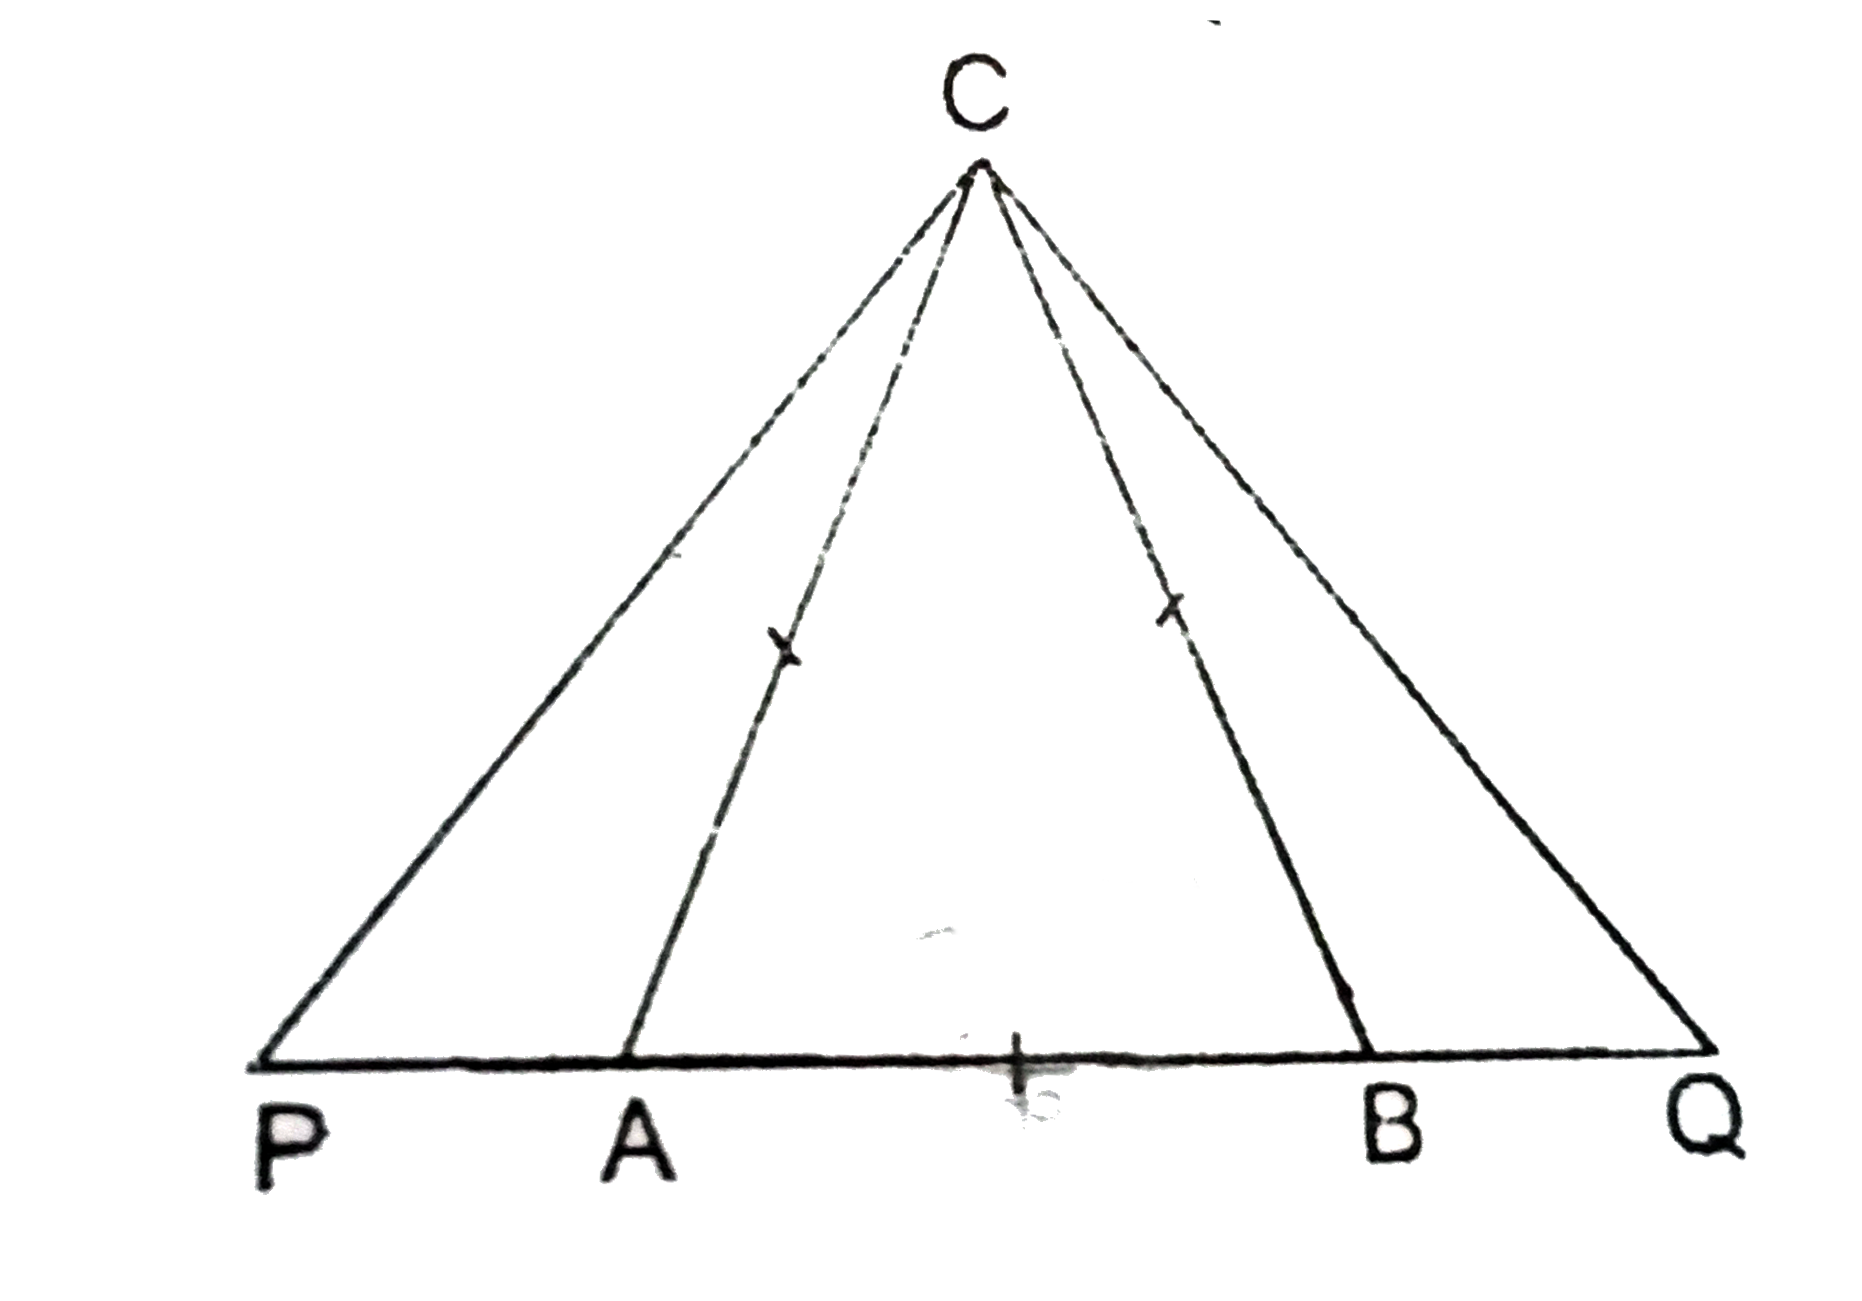 समबाहु DeltaABC में आधार AB को दोनों तरफ P और Q बिन्दुओं तक बढ़ाया गया है । इस प्रकार कि APxxBQ=AC^2. सिद्ध करें कि DeltaACP~DeltaBQC.